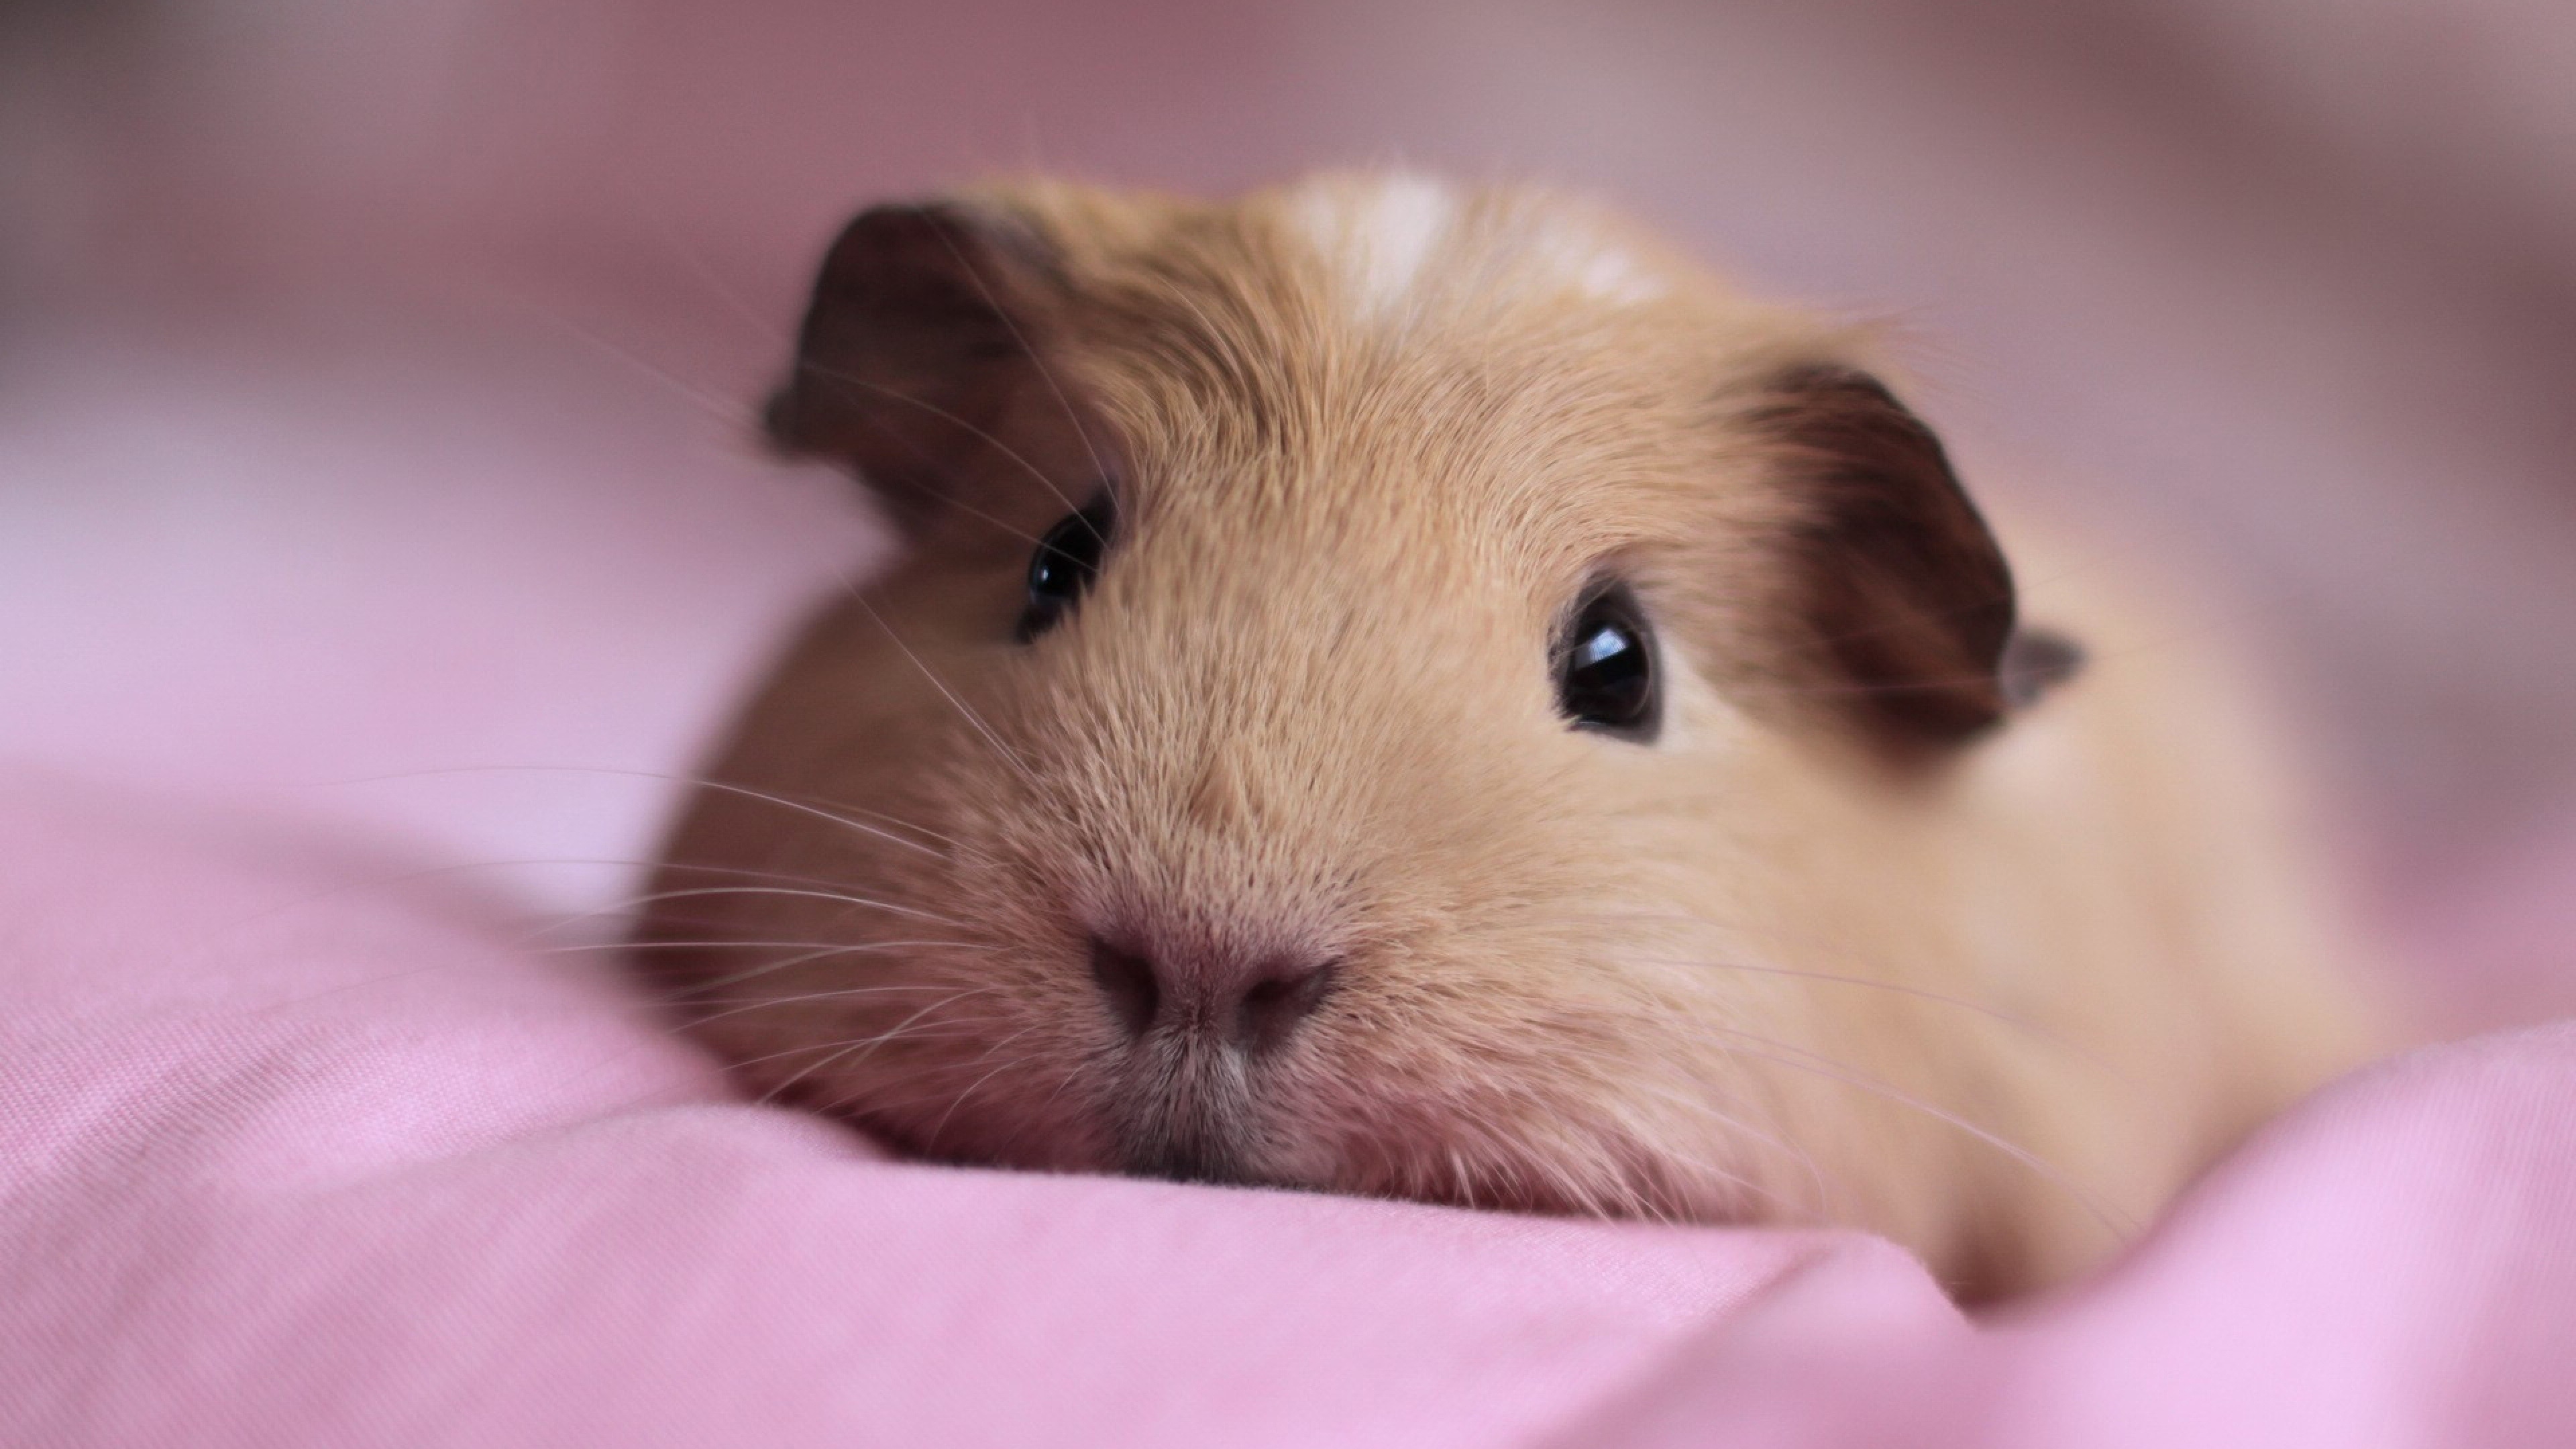 Cute guinea pigs, Adorable creatures, Piggy paradise, Piggy's world, 3840x2160 4K Desktop